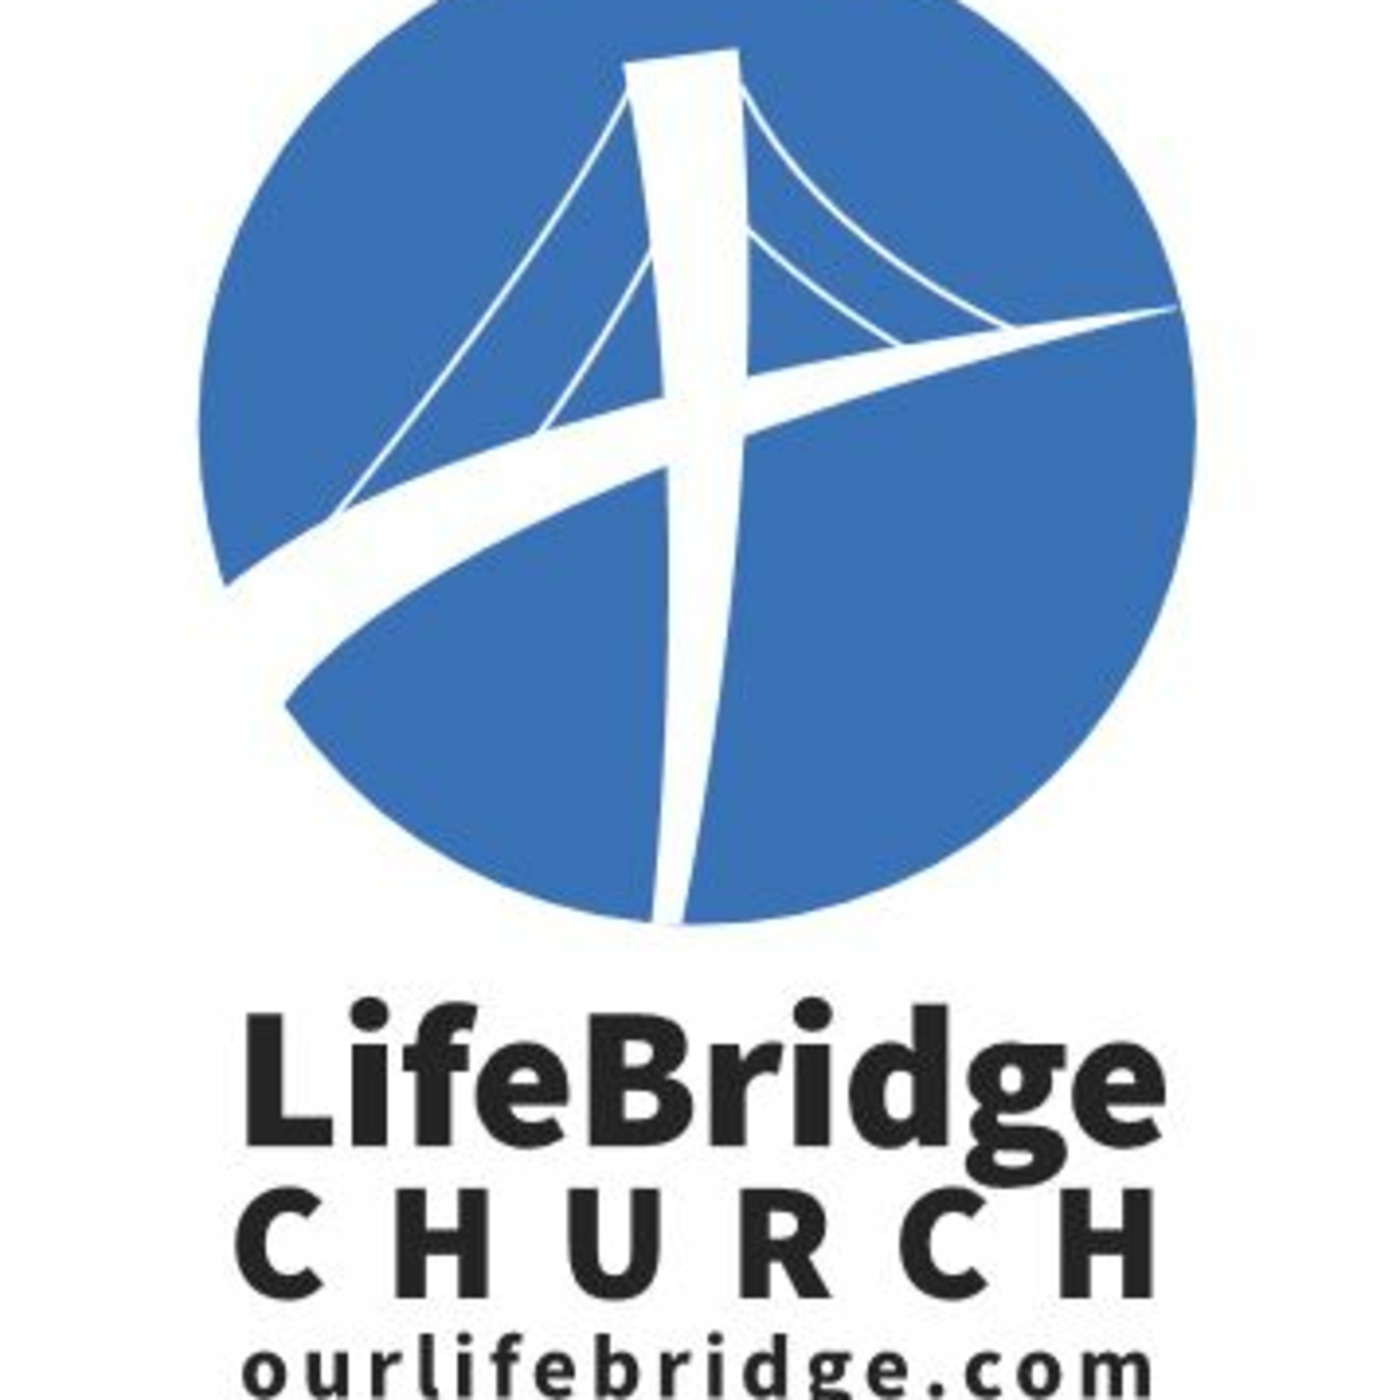 Our LifeBridge Church